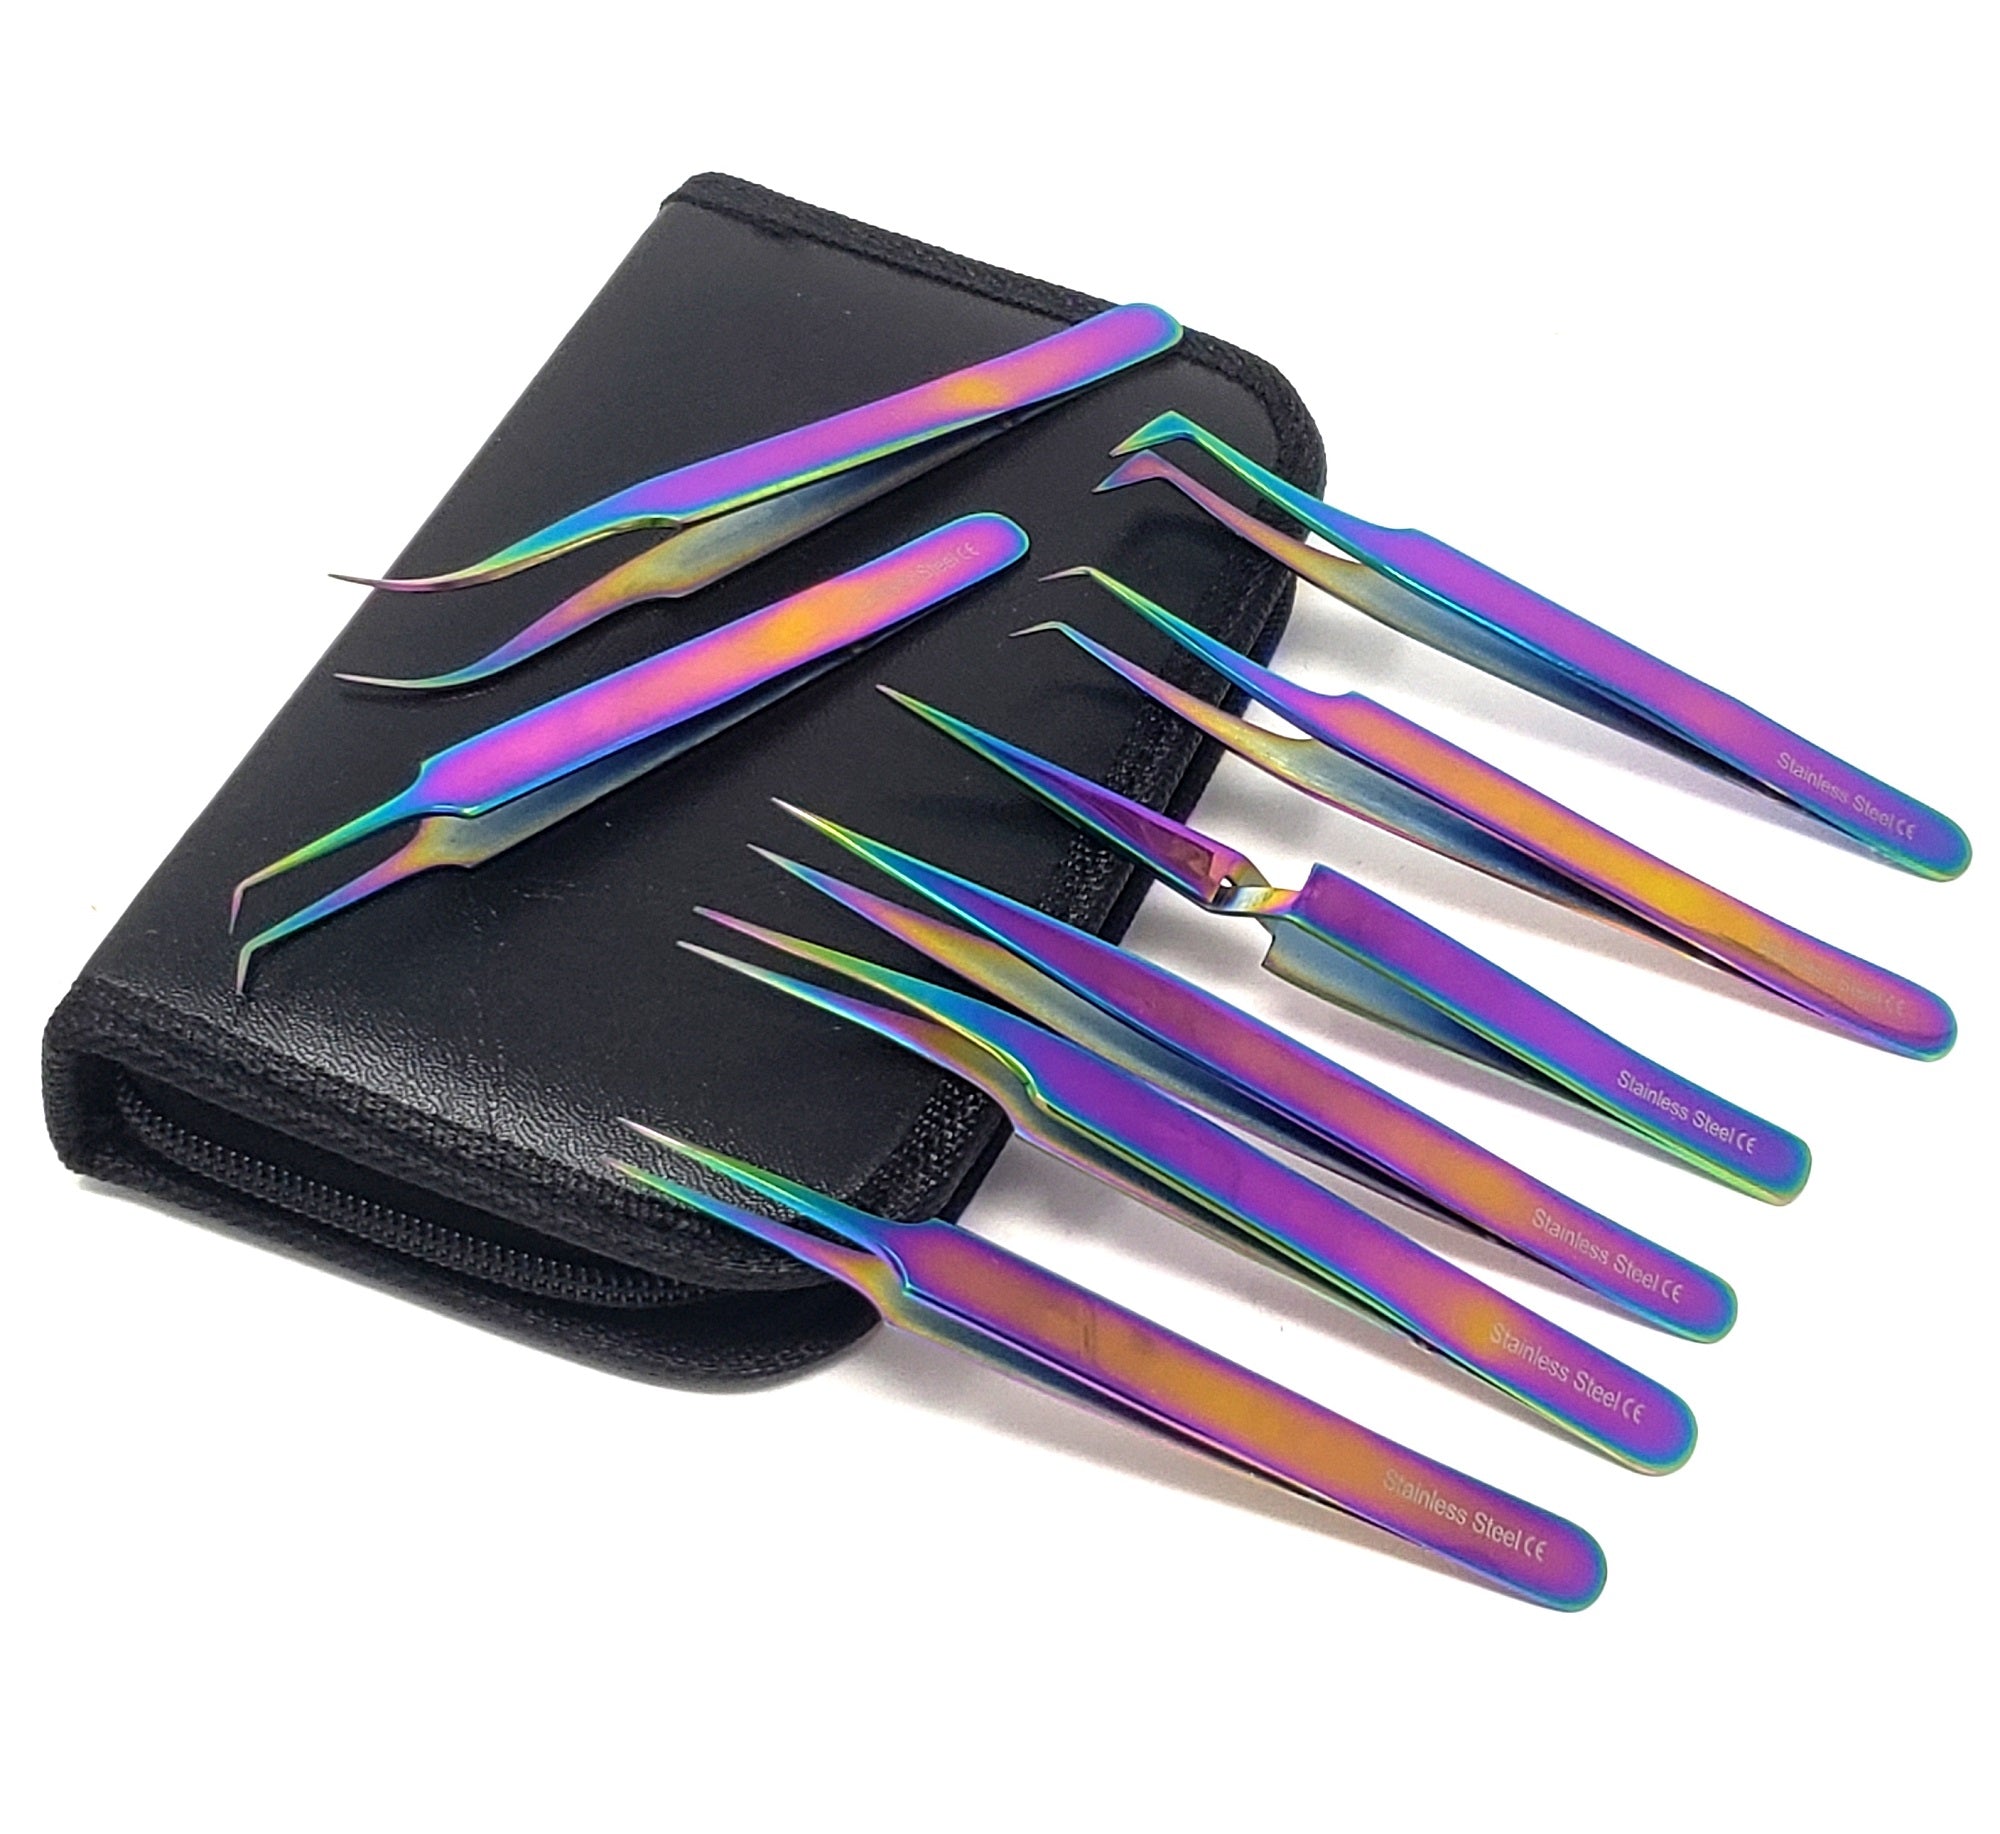 2pcs Stainless Steel Precision Tweezers, Color Scrapbook Tweezers, Straight  and Curved Tweezers, Purple